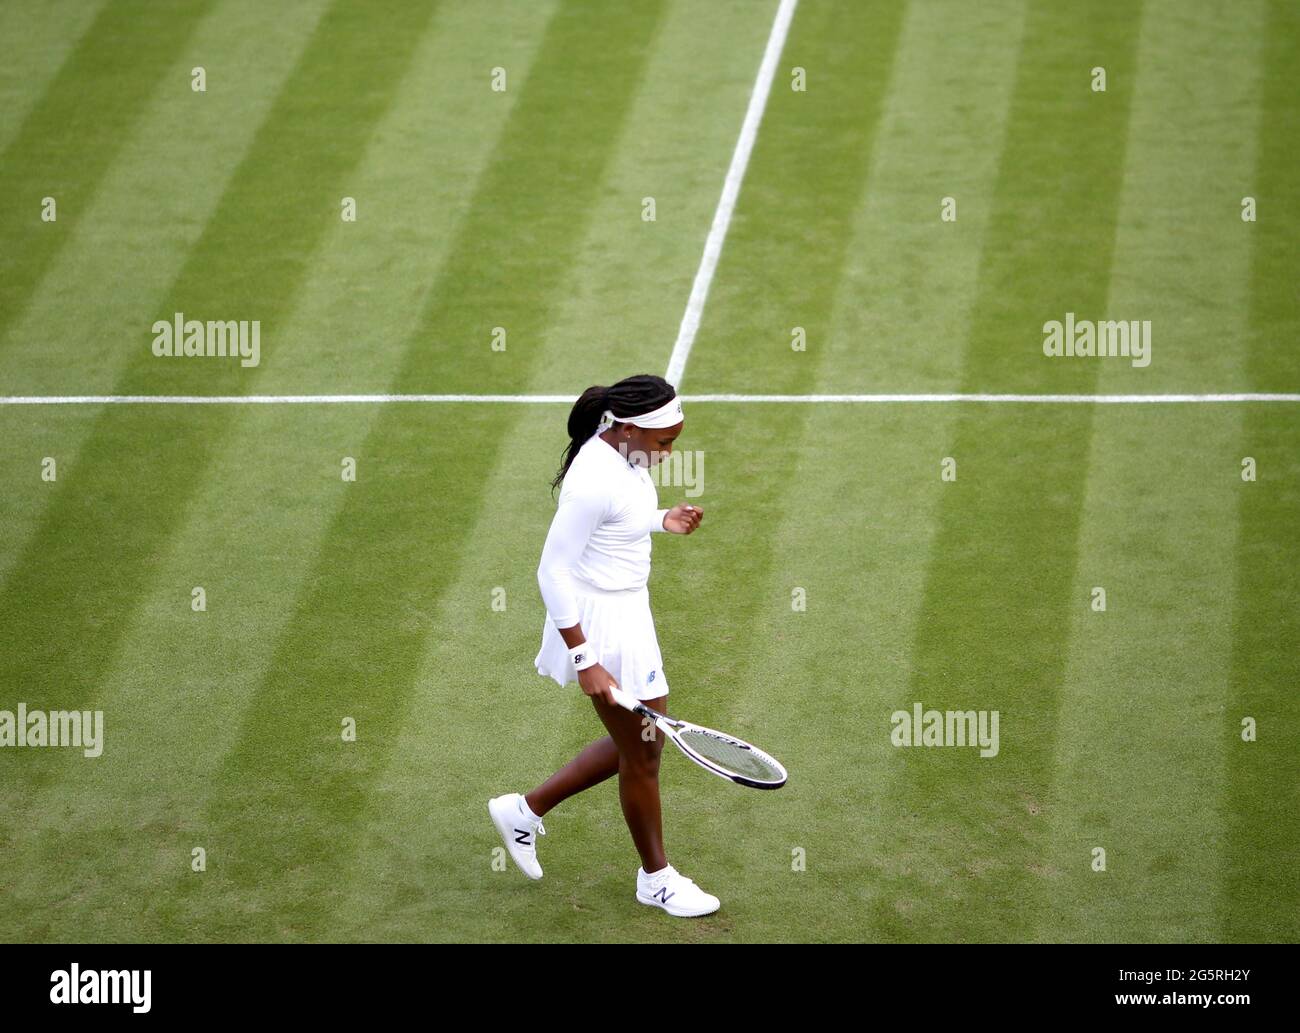 Coco Gauff reagiert während ihres ersten Damen-Einzelmatches in der ersten Runde auf Platz 2 von Frau Jones am zweiten Tag von Wimbledon im All England Lawn Tennis und Croquet Club in Wimbledon. Bilddatum: Dienstag, 29. Juni 2021. Stockfoto